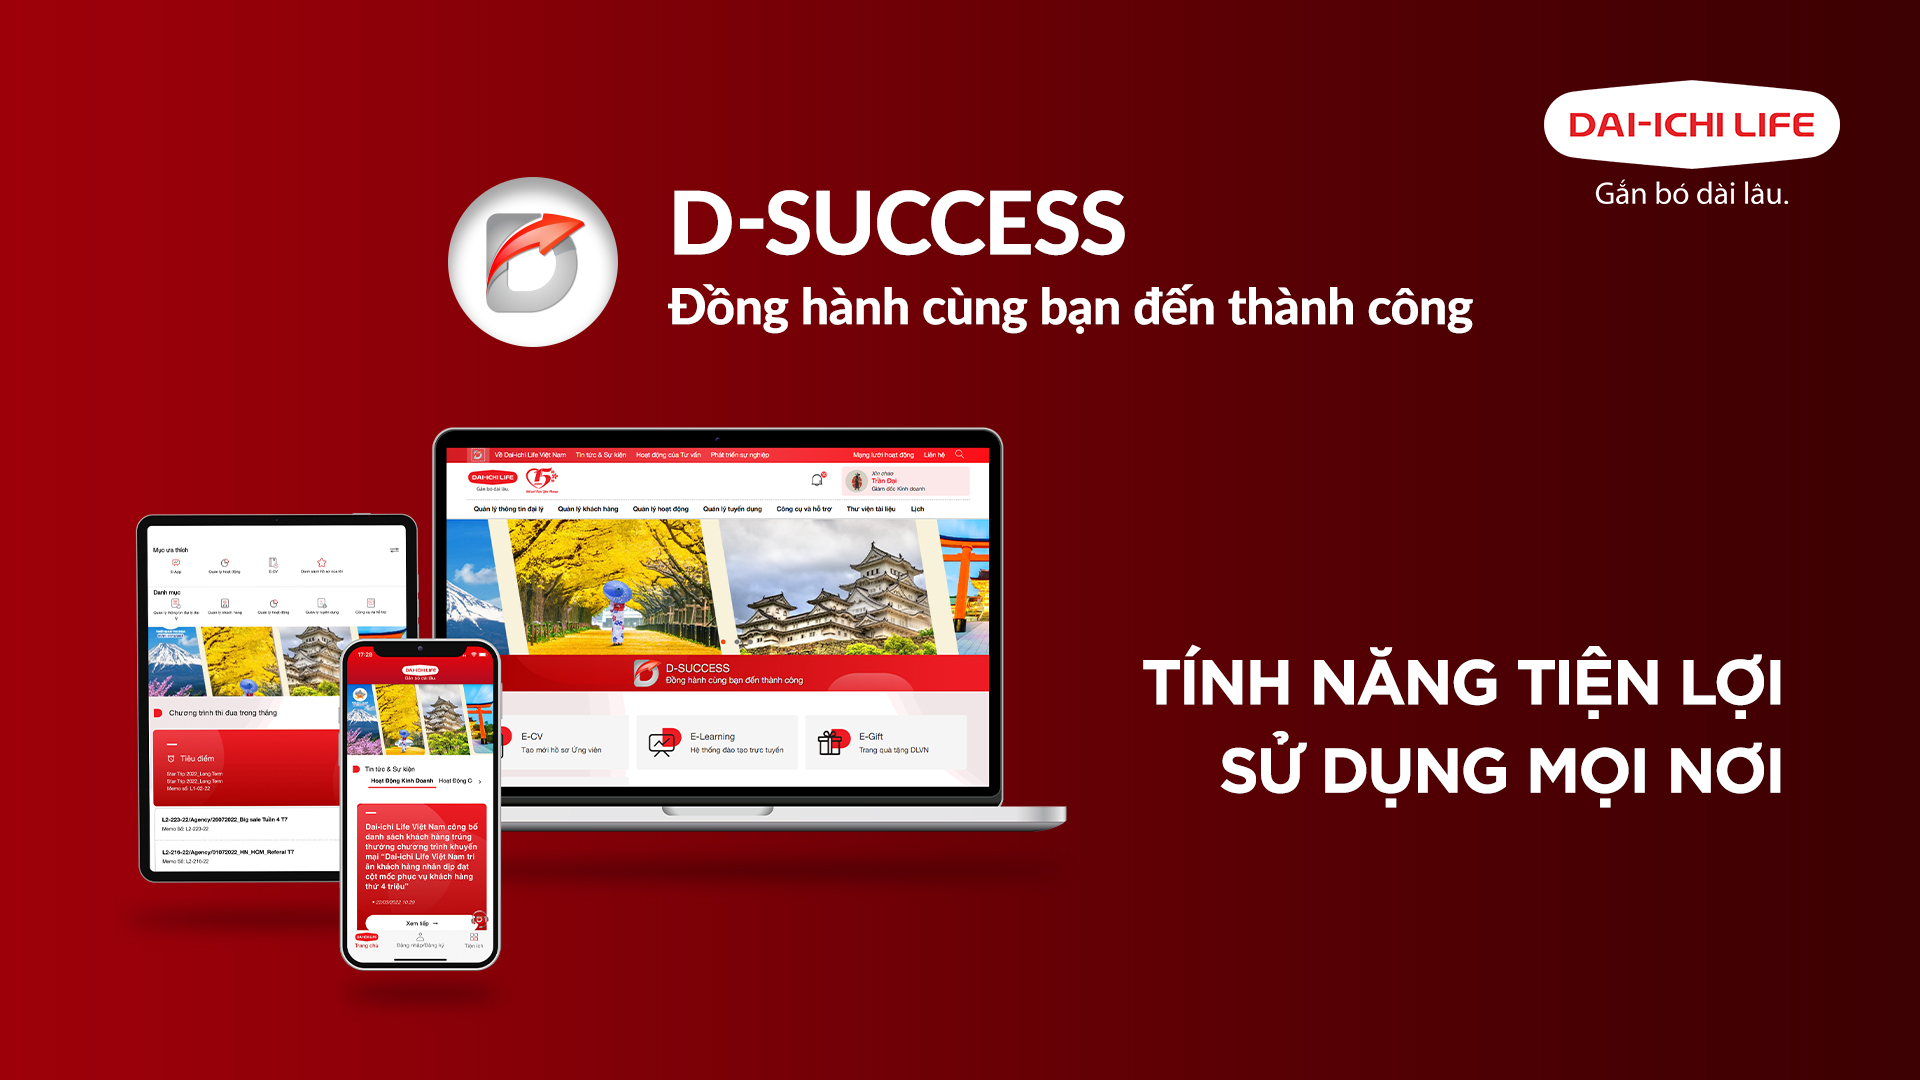 Dai-ichi Life Việt Nam ra mắt Hệ thống Dai-ichi Success dành cho Tư vấn Tài chính...